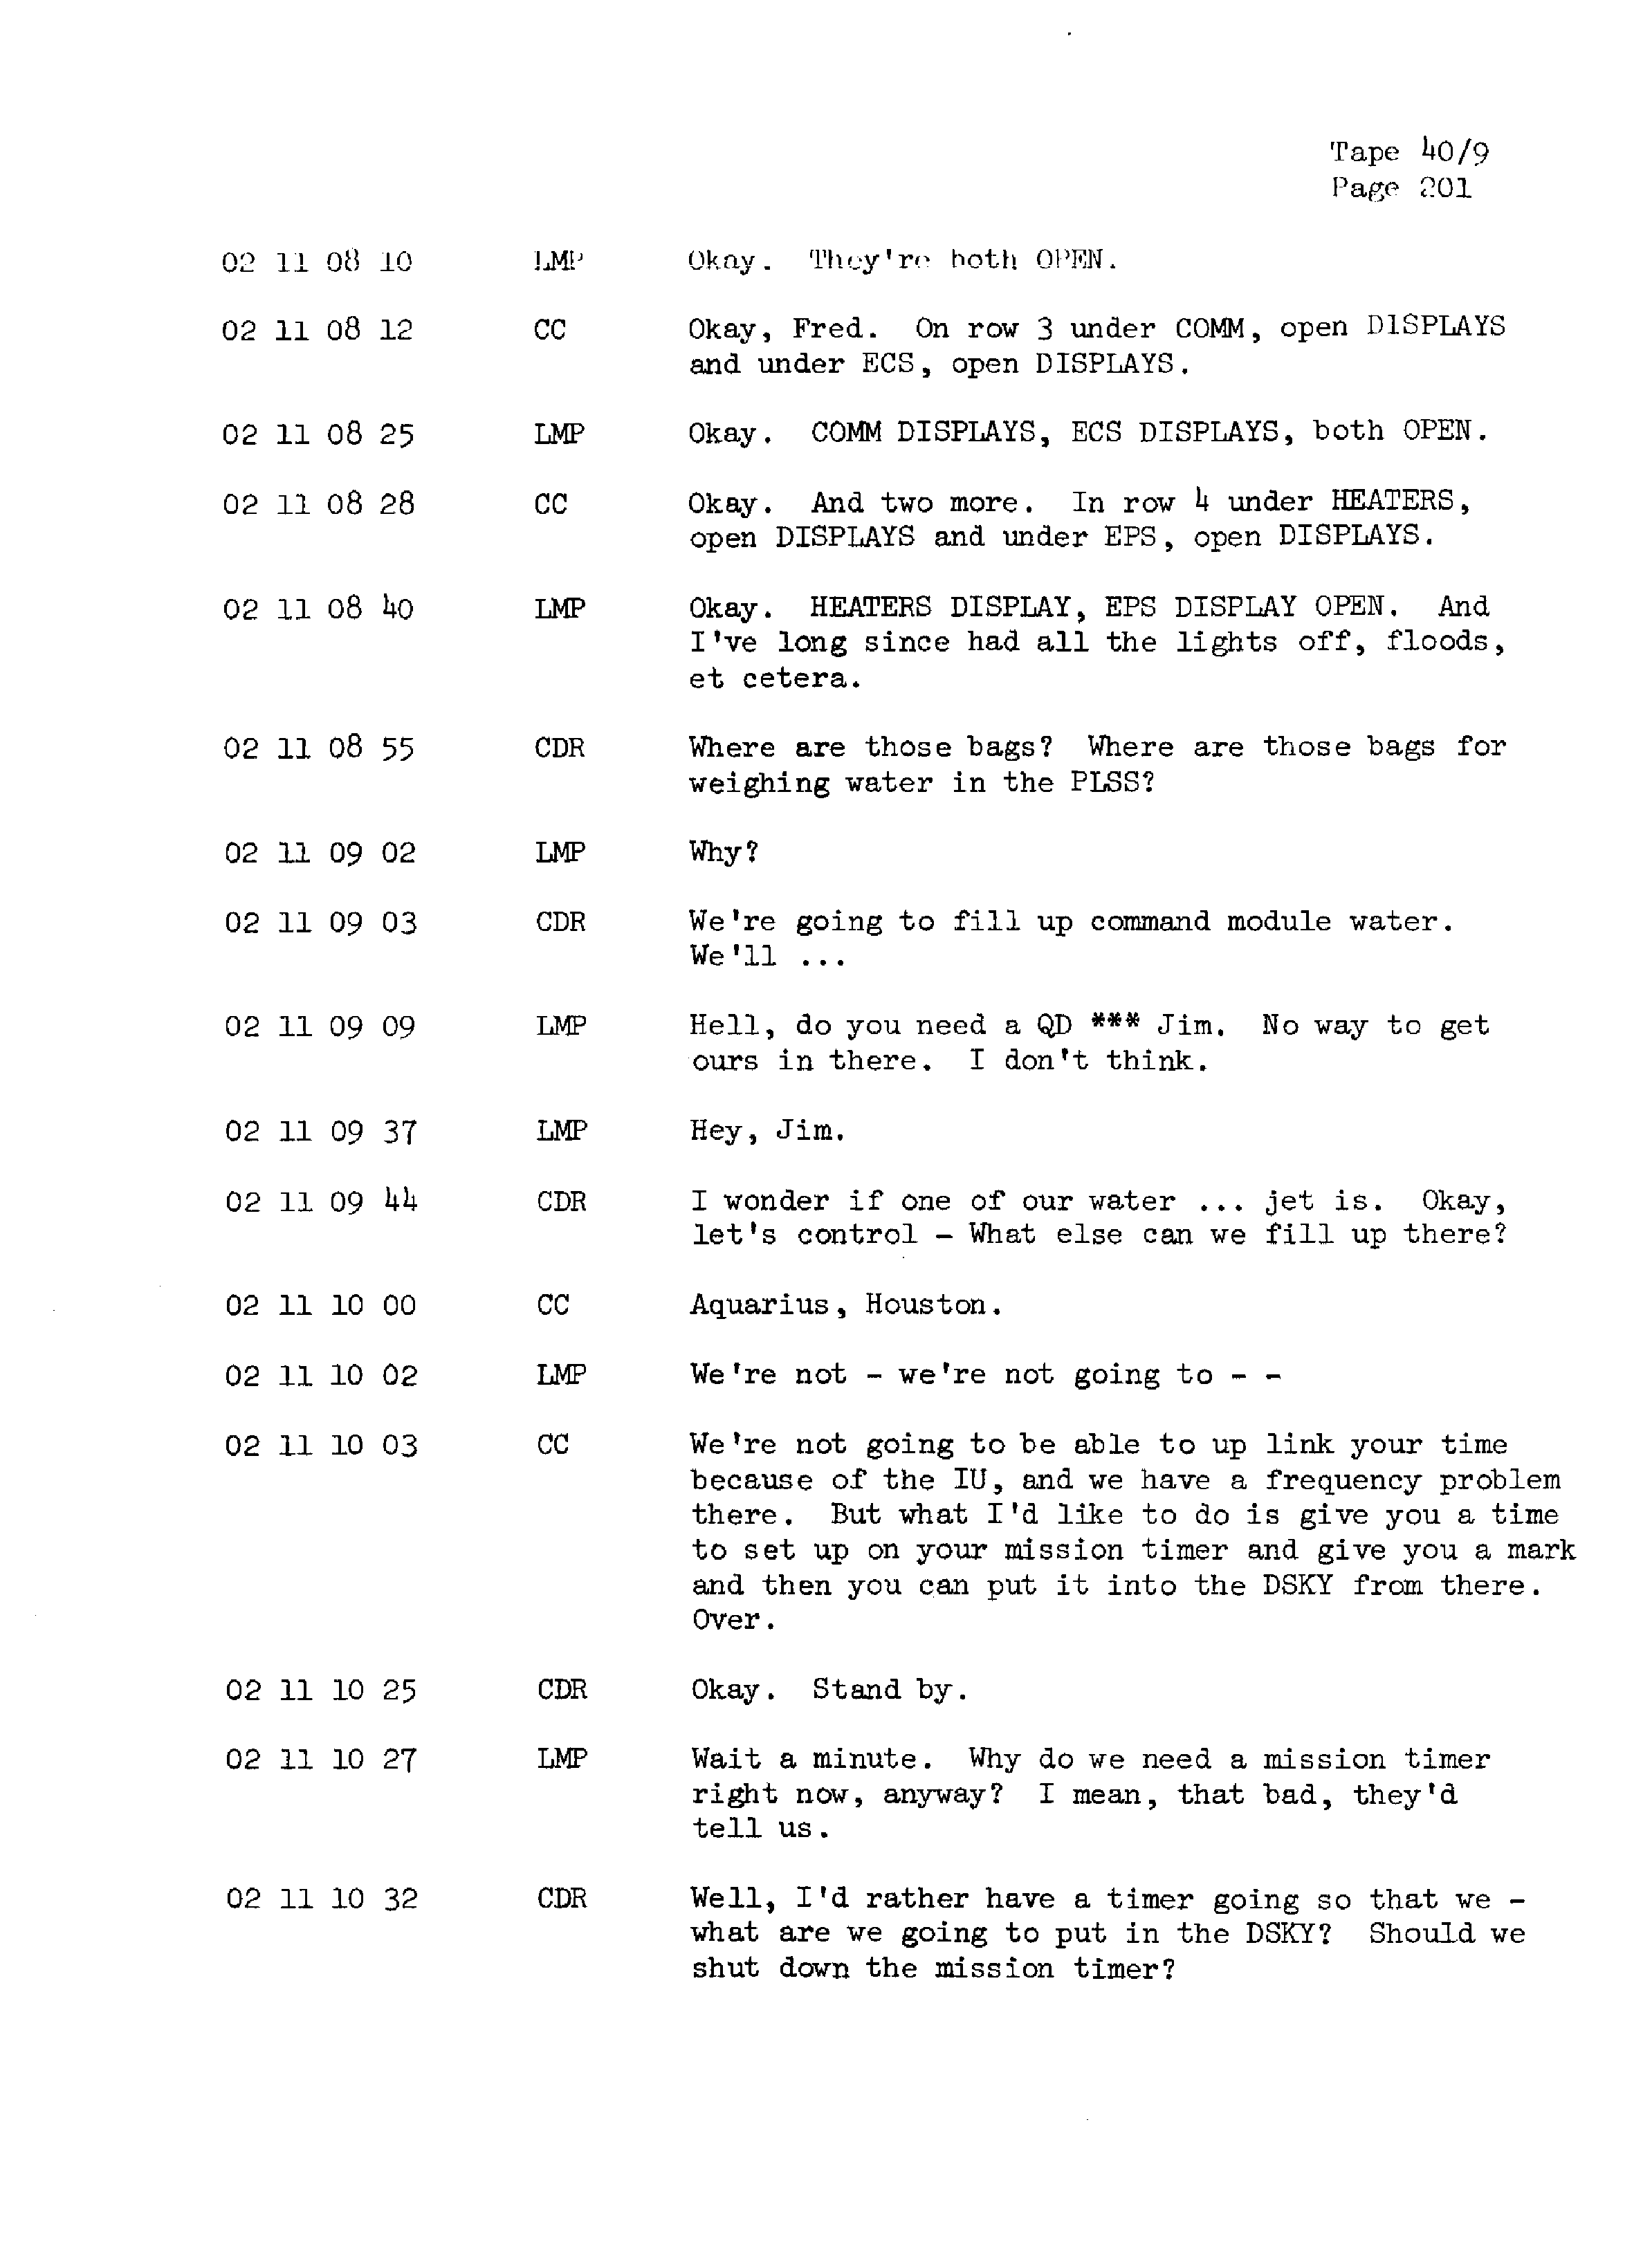 Page 208 of Apollo 13’s original transcript